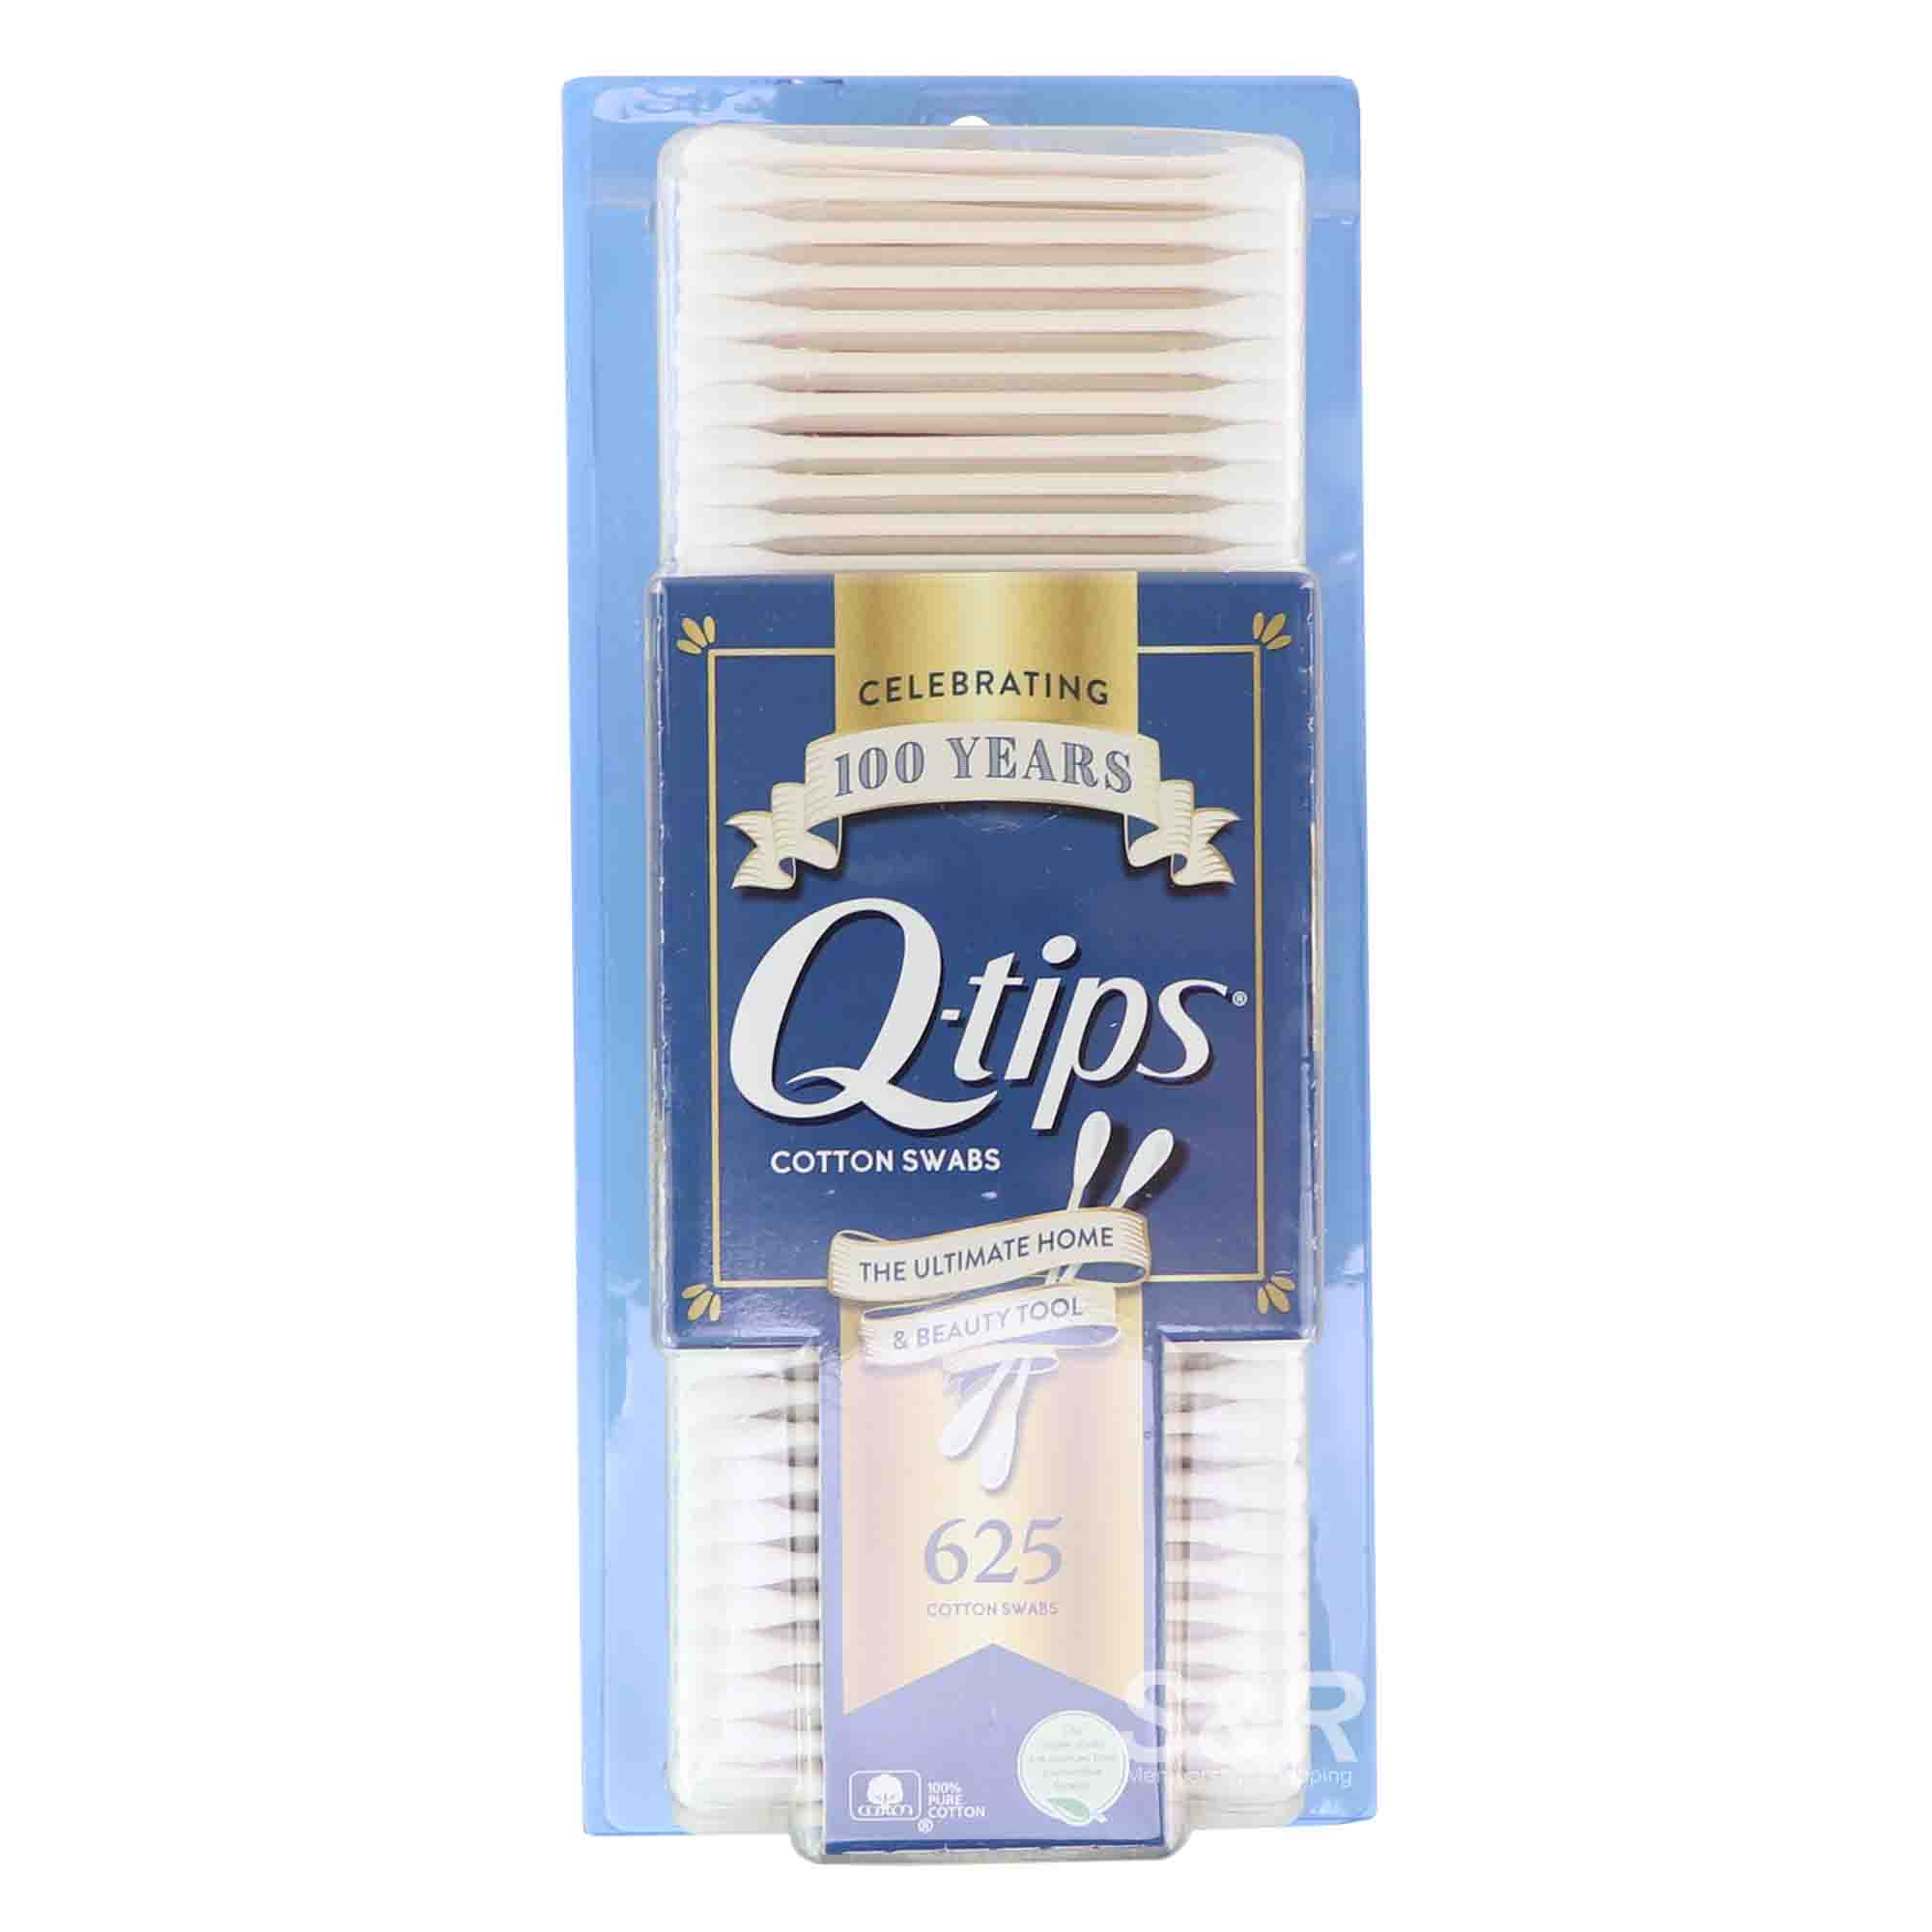 Q-tips Cotton Swabs 625pcs